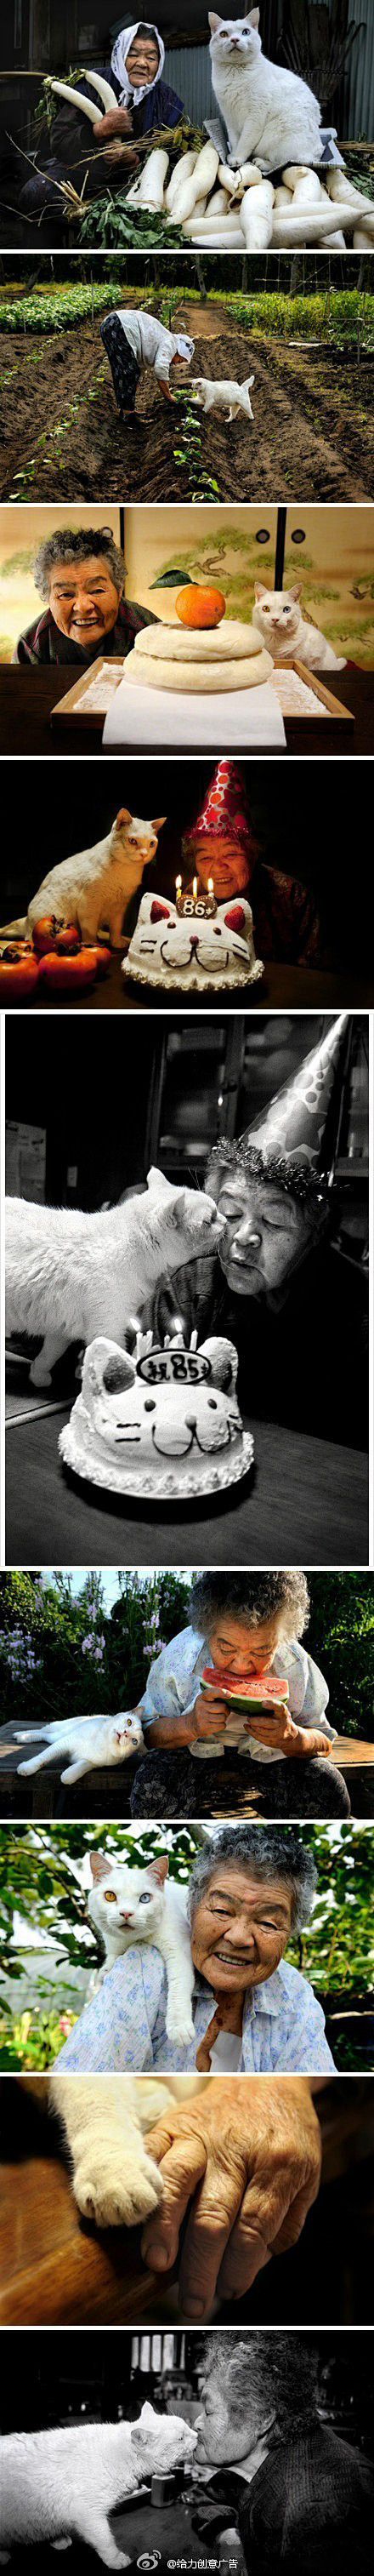 老奶奶和猫咪的故事